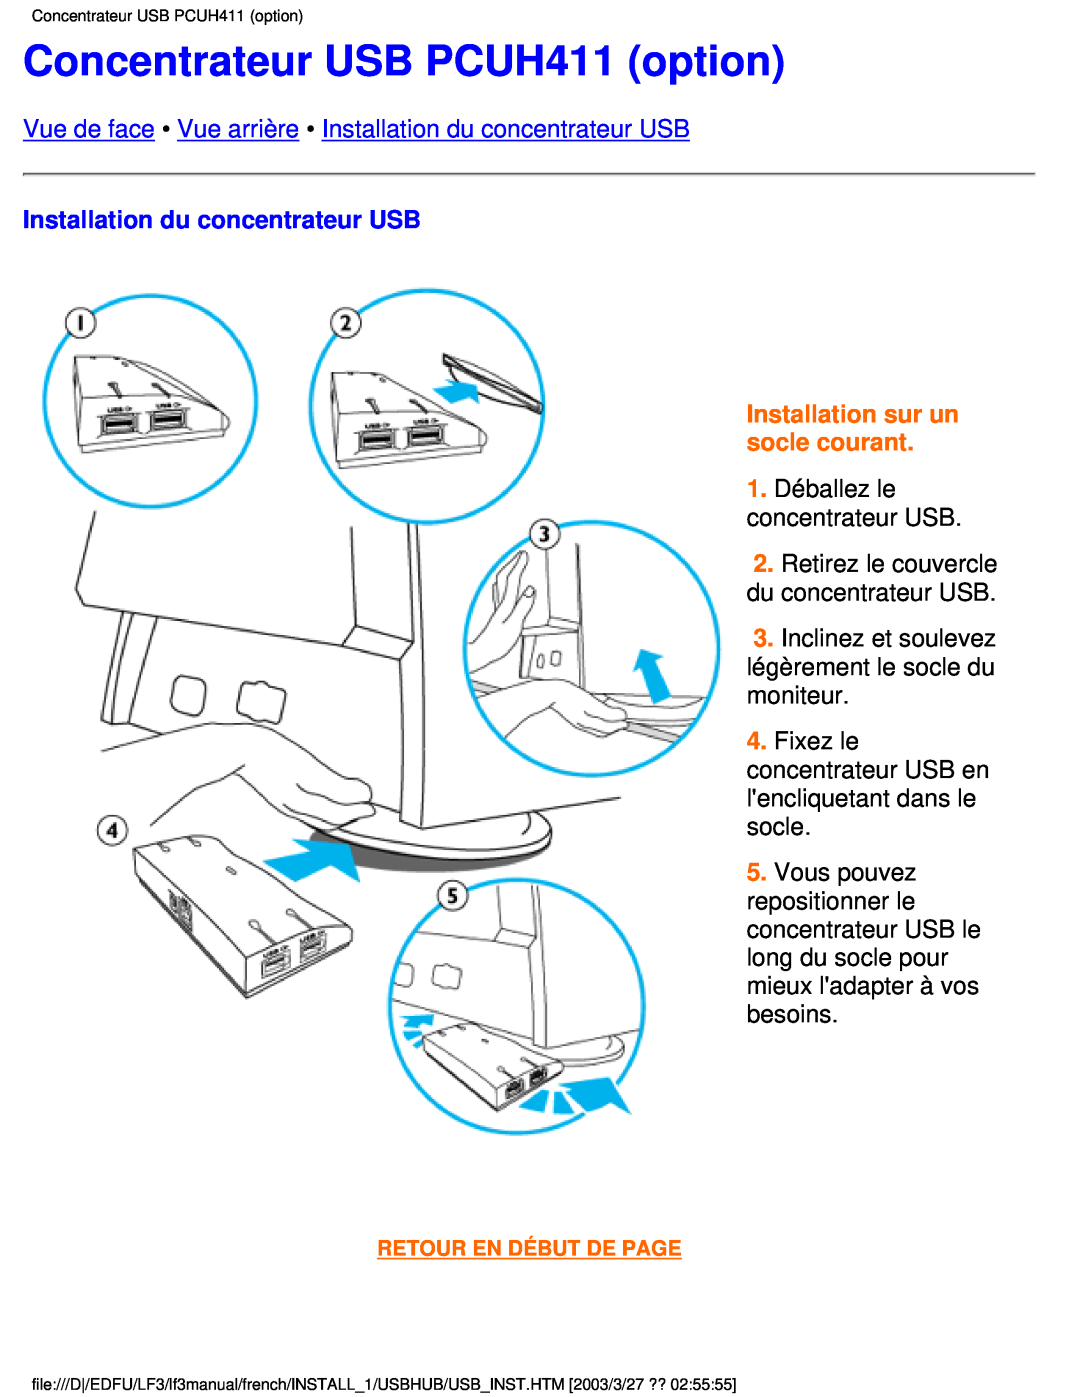 Philips 105E user manual Concentrateur USB PCUH411 option, Vue de face Vue arrière Installation du concentrateur USB 